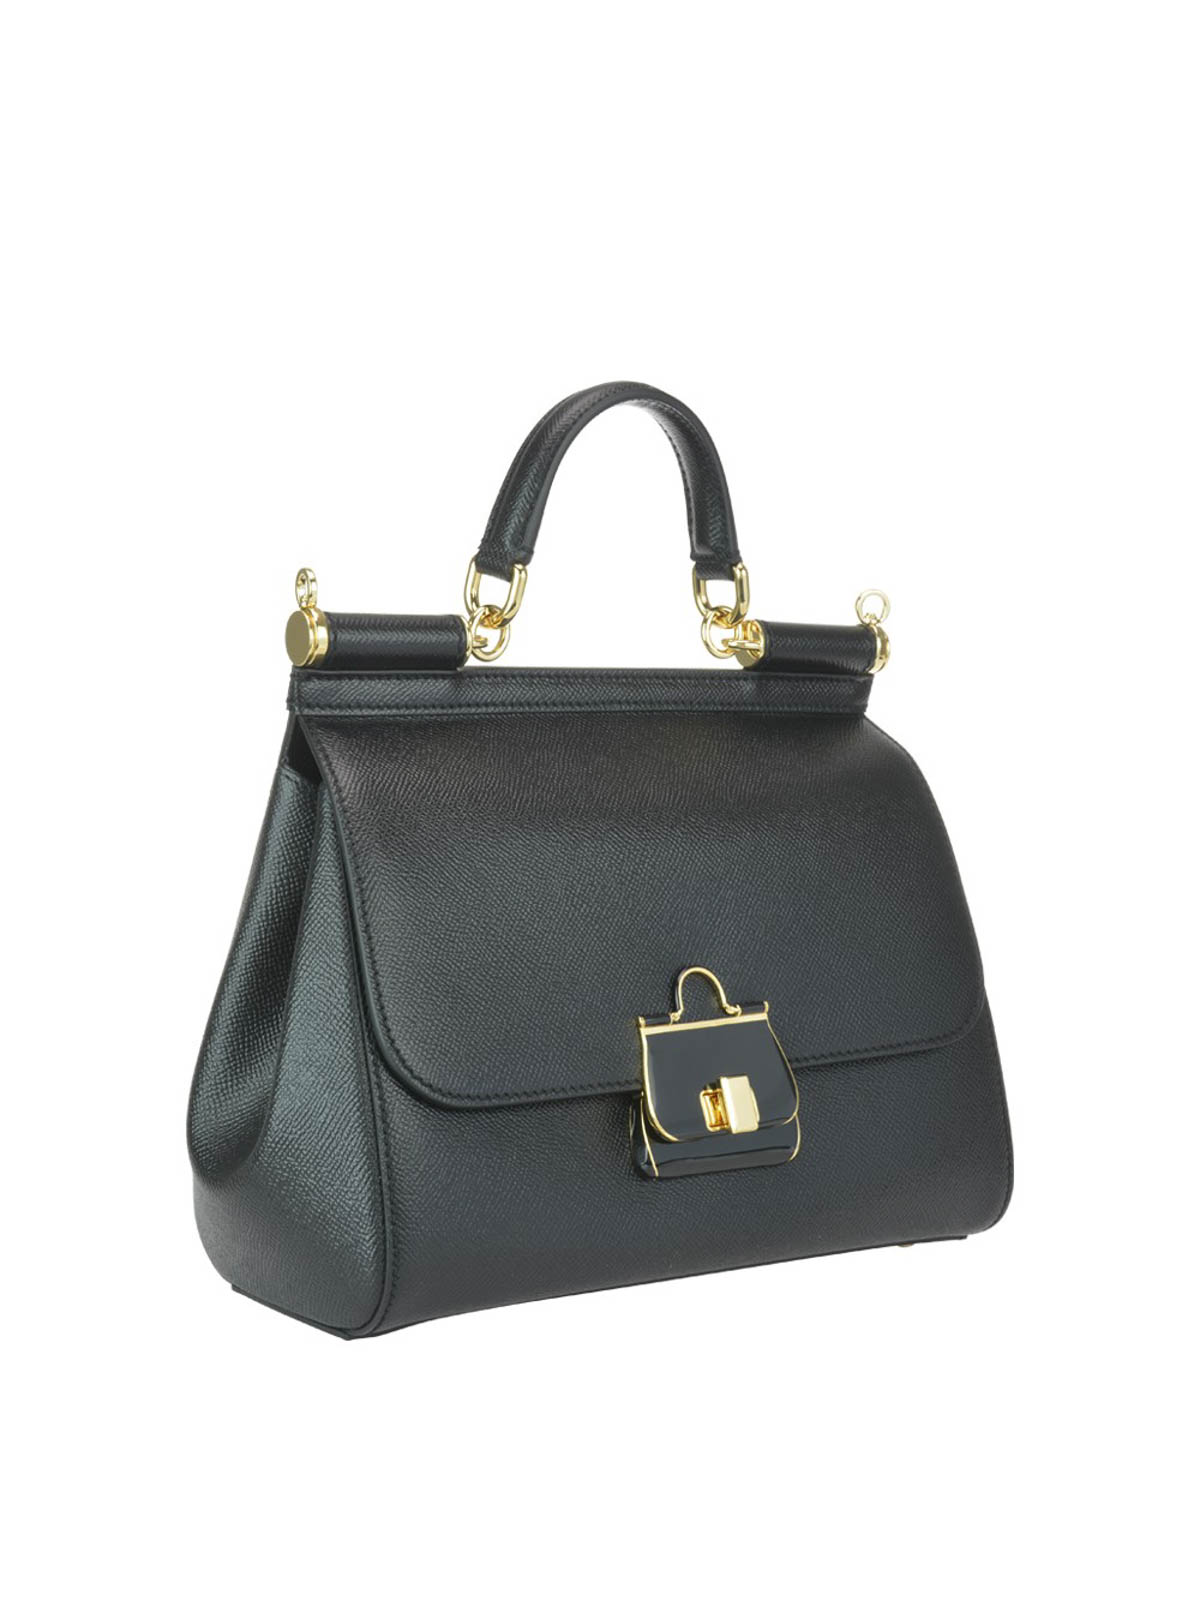 Medium Sicily Dauphine Leather Bag